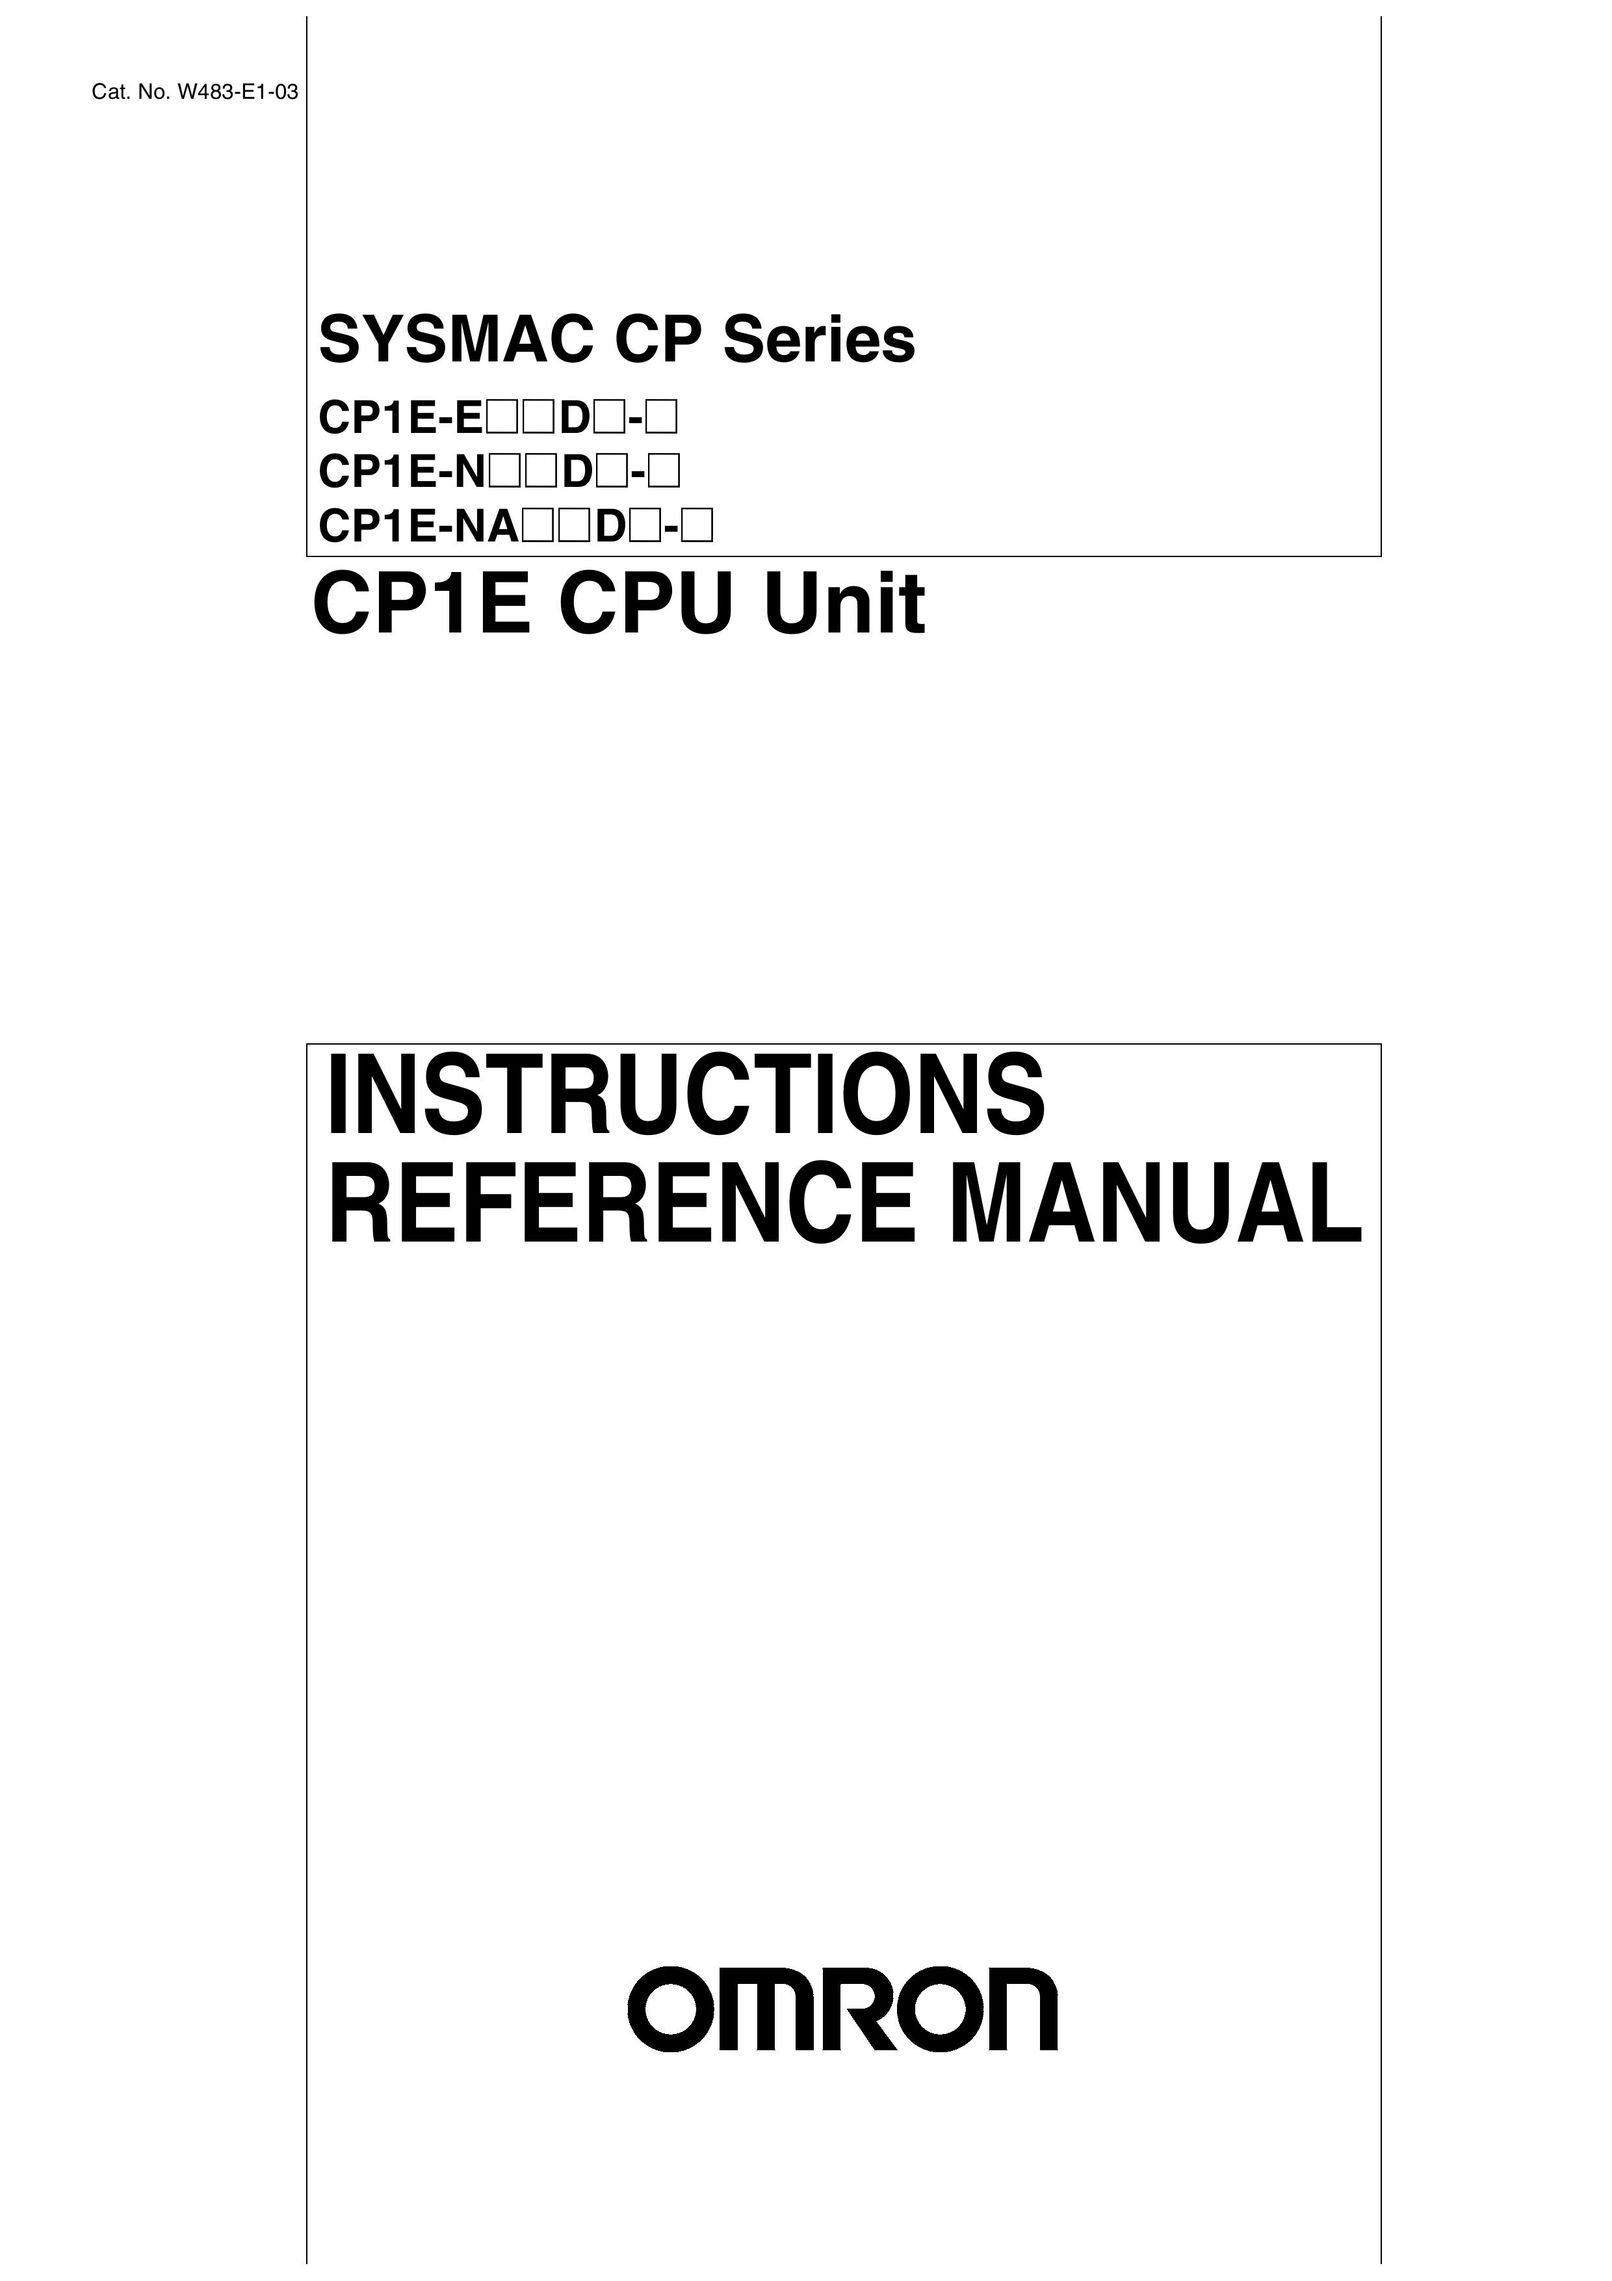 Omron CP1E-E@@D@-@ Computer Hardware User Manual